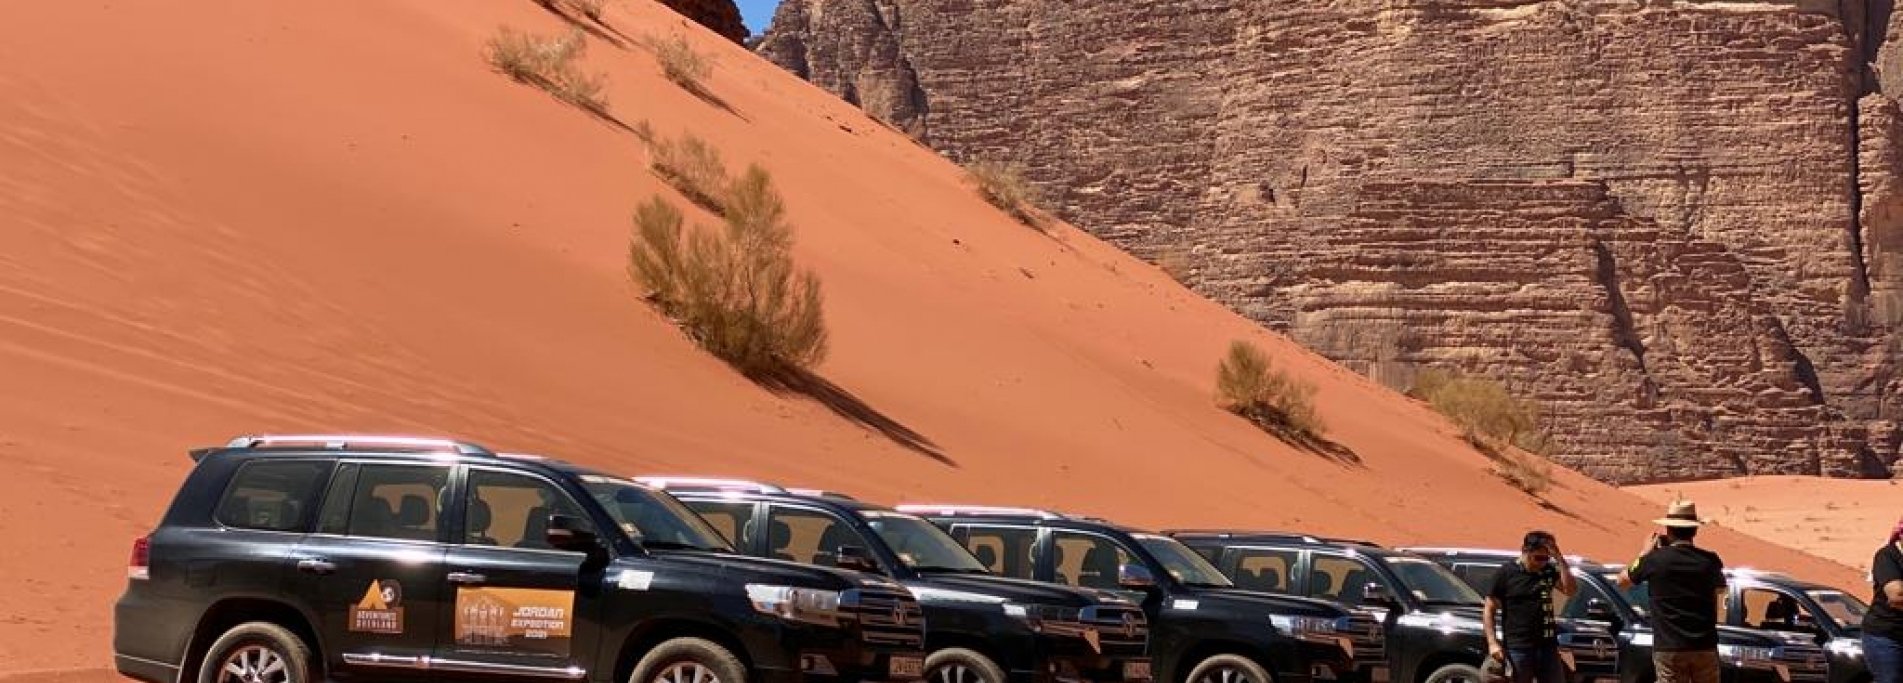 Джип-сафари тур по Иордании  - Self-driving по пустыни